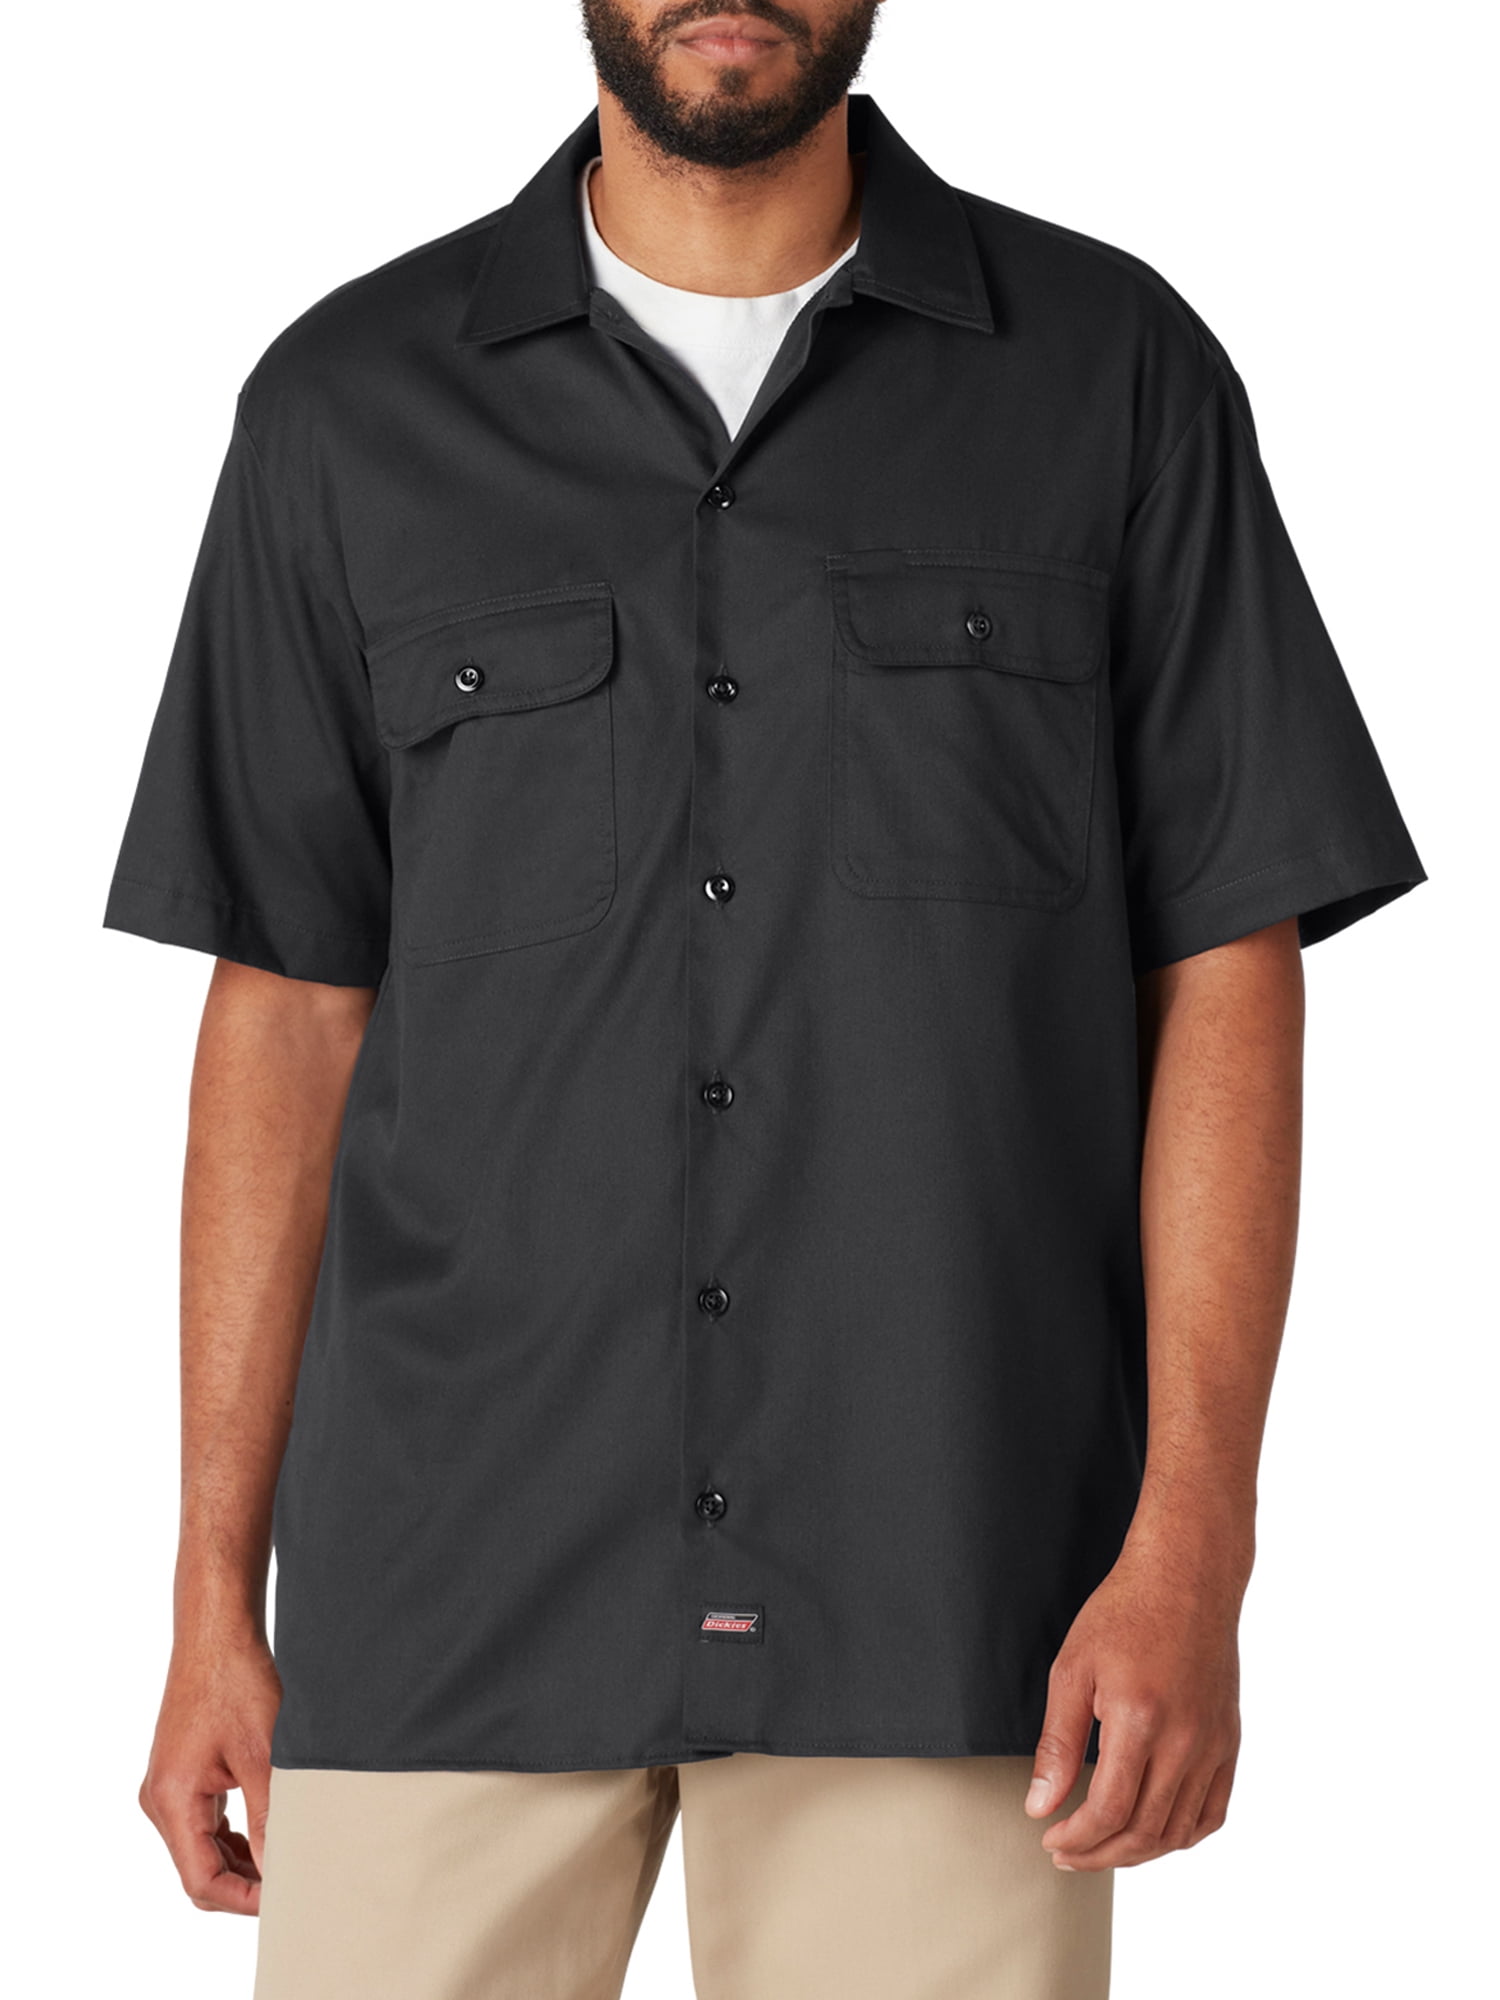 Dickies Dark Brown Short Sleeve Button Up Work Shirt Zumiez, 49% OFF